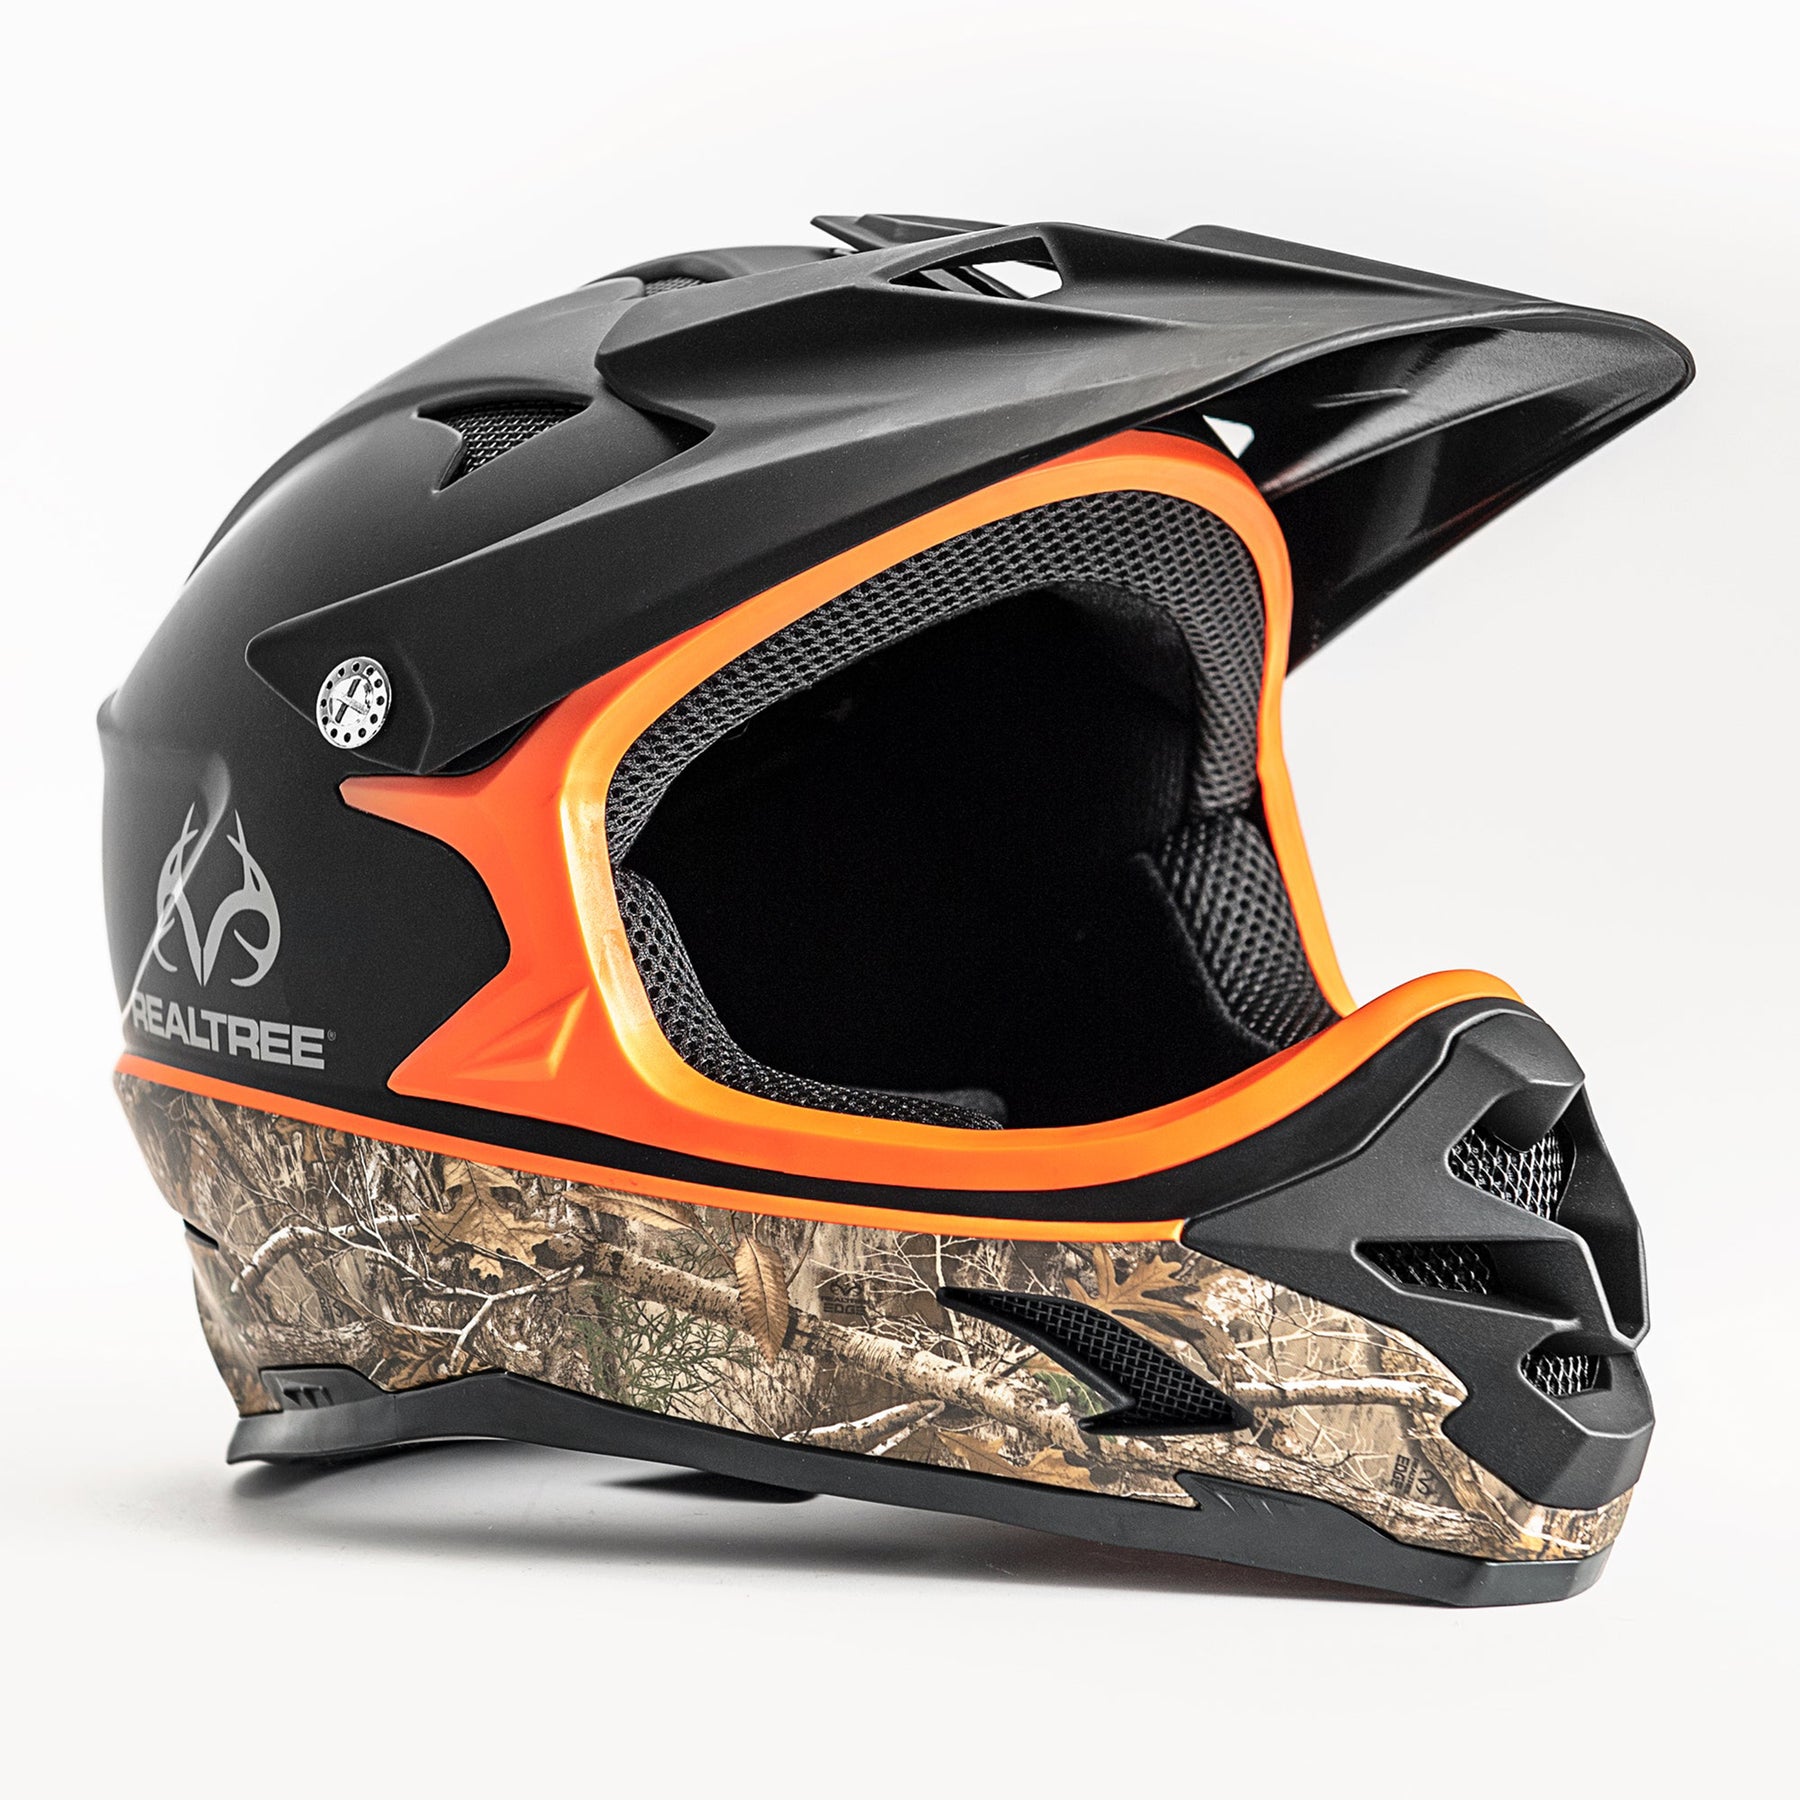 RealTree™ Full Face Youth Multi-Sport Helmet | Helmet for Kids Ages 8+